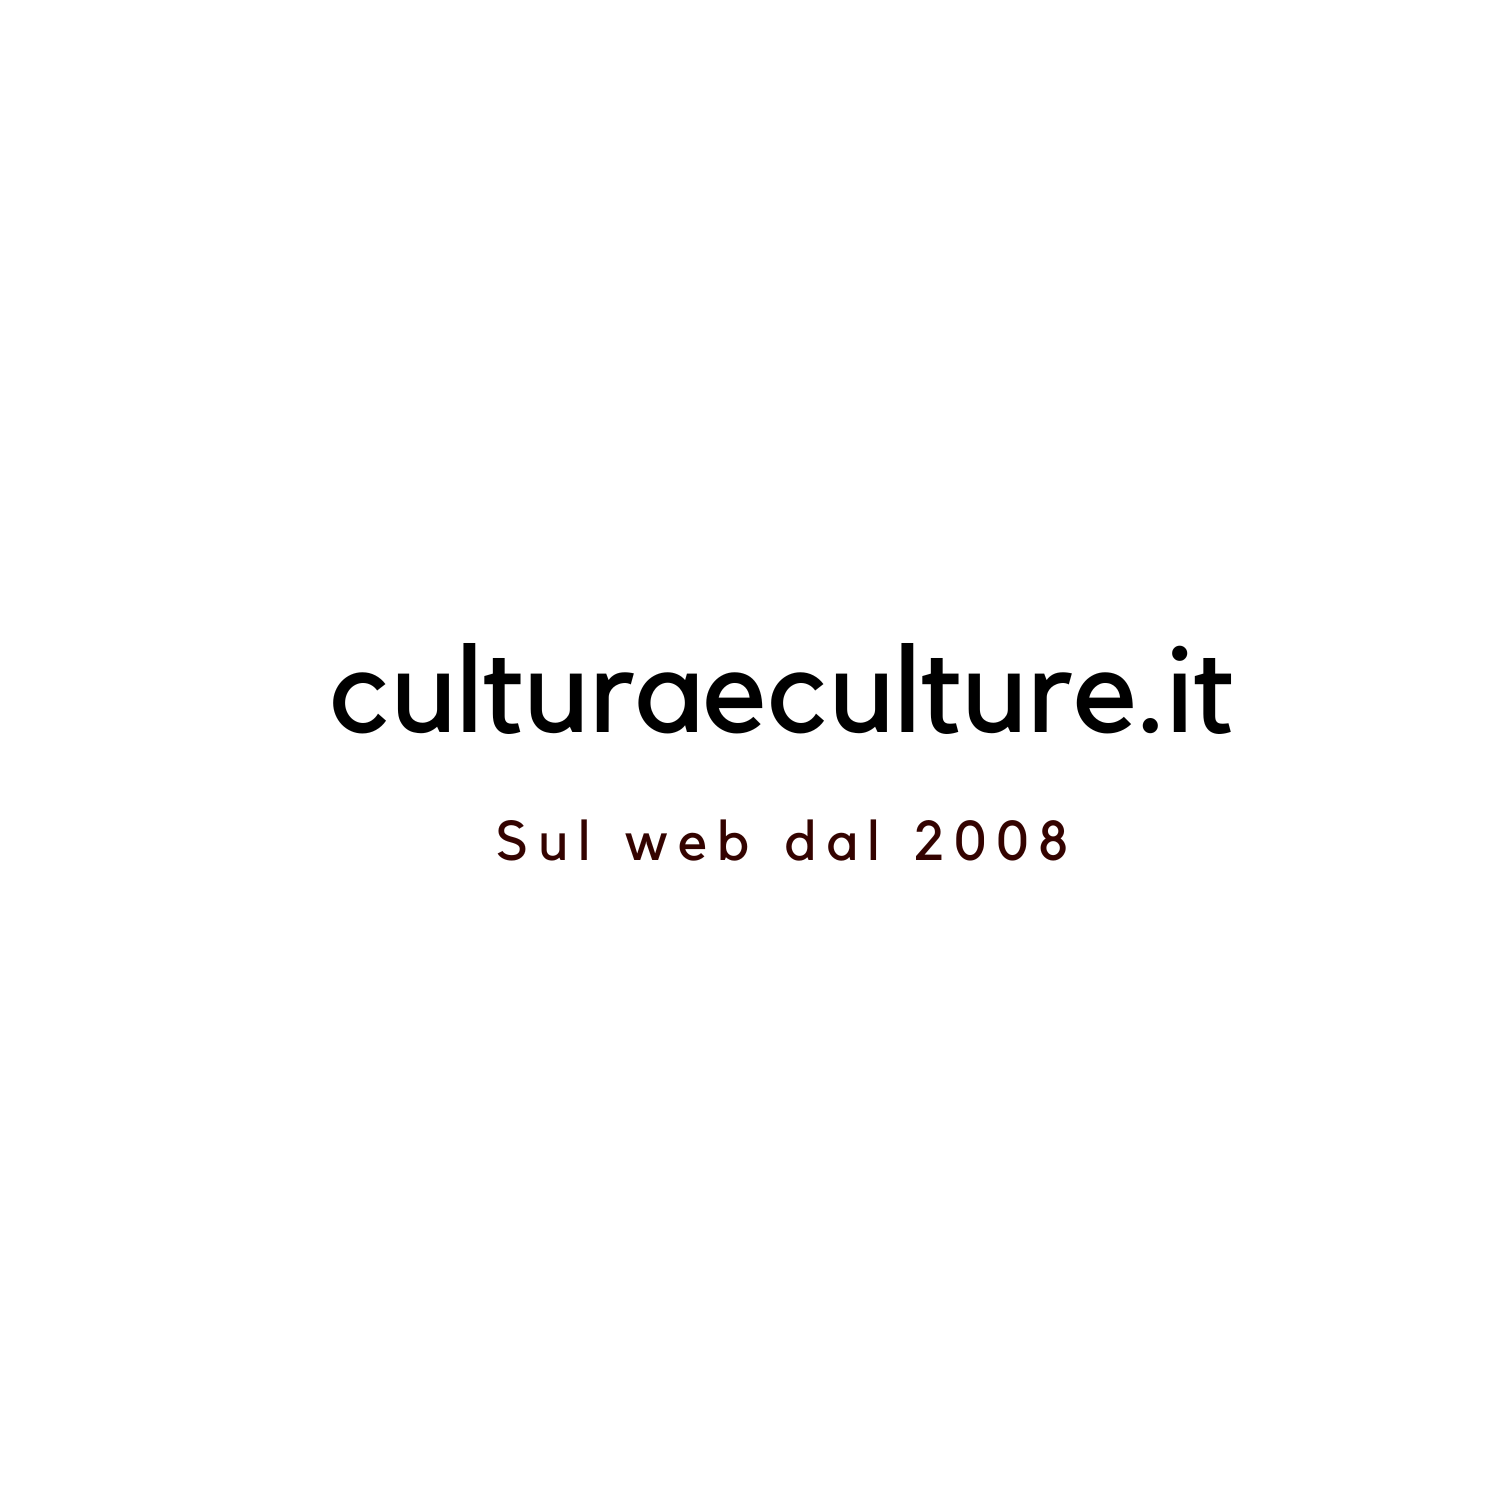 (c) Culturaeculture.it